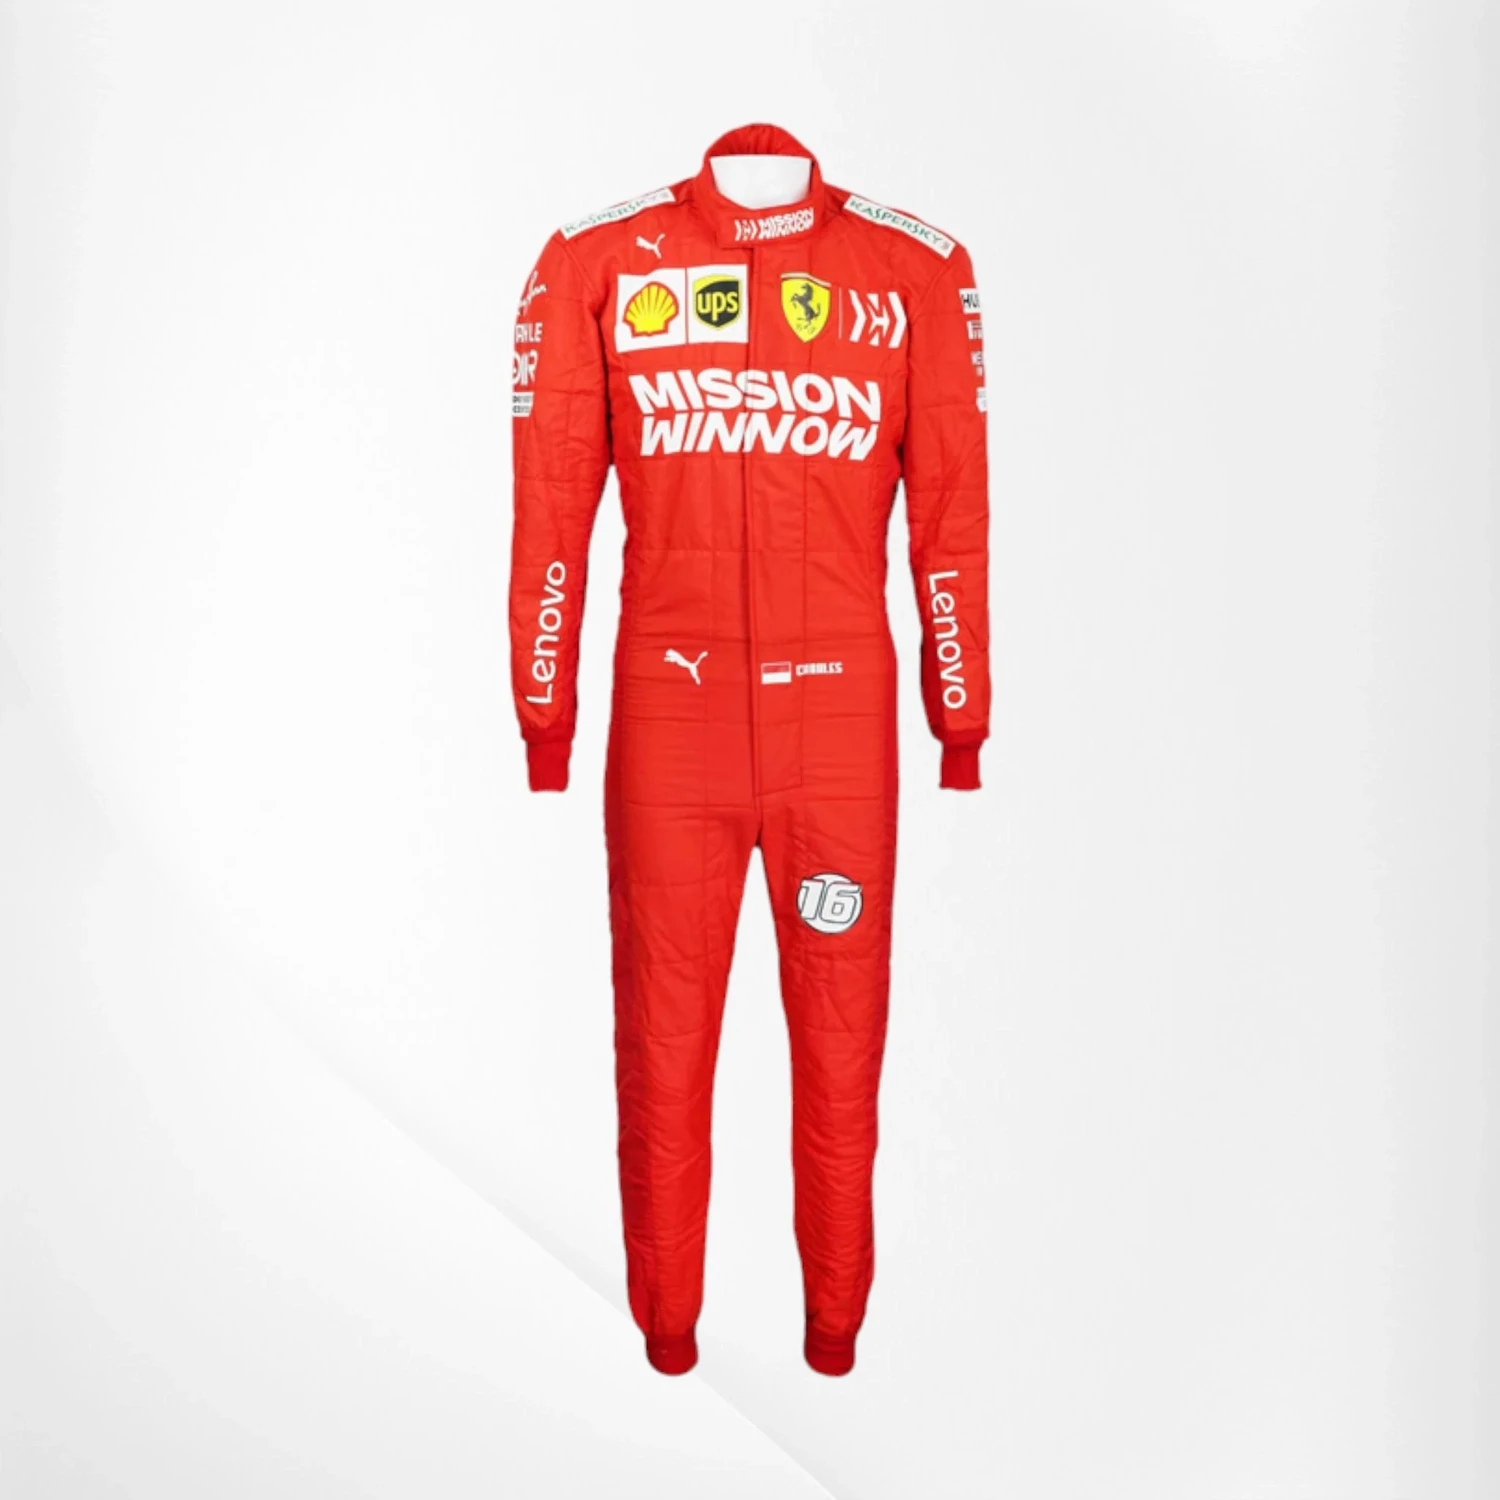 2019 Charles Leclerc Ferrari F1 Race Suit